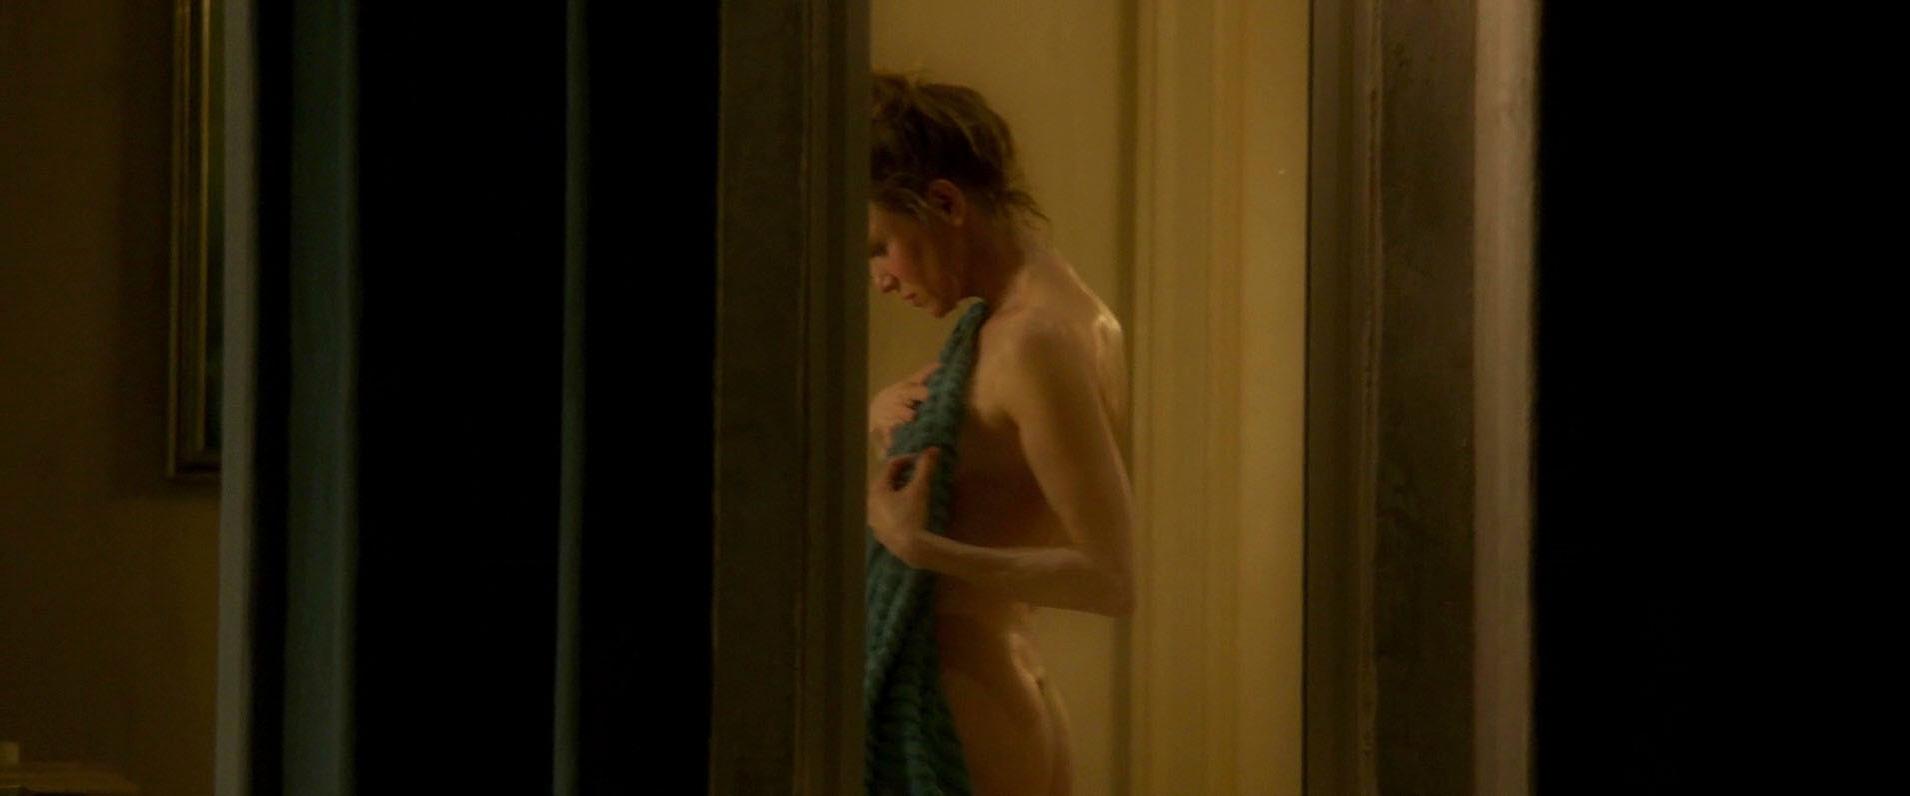 Naked Girl Search Renee Zellweger Naked